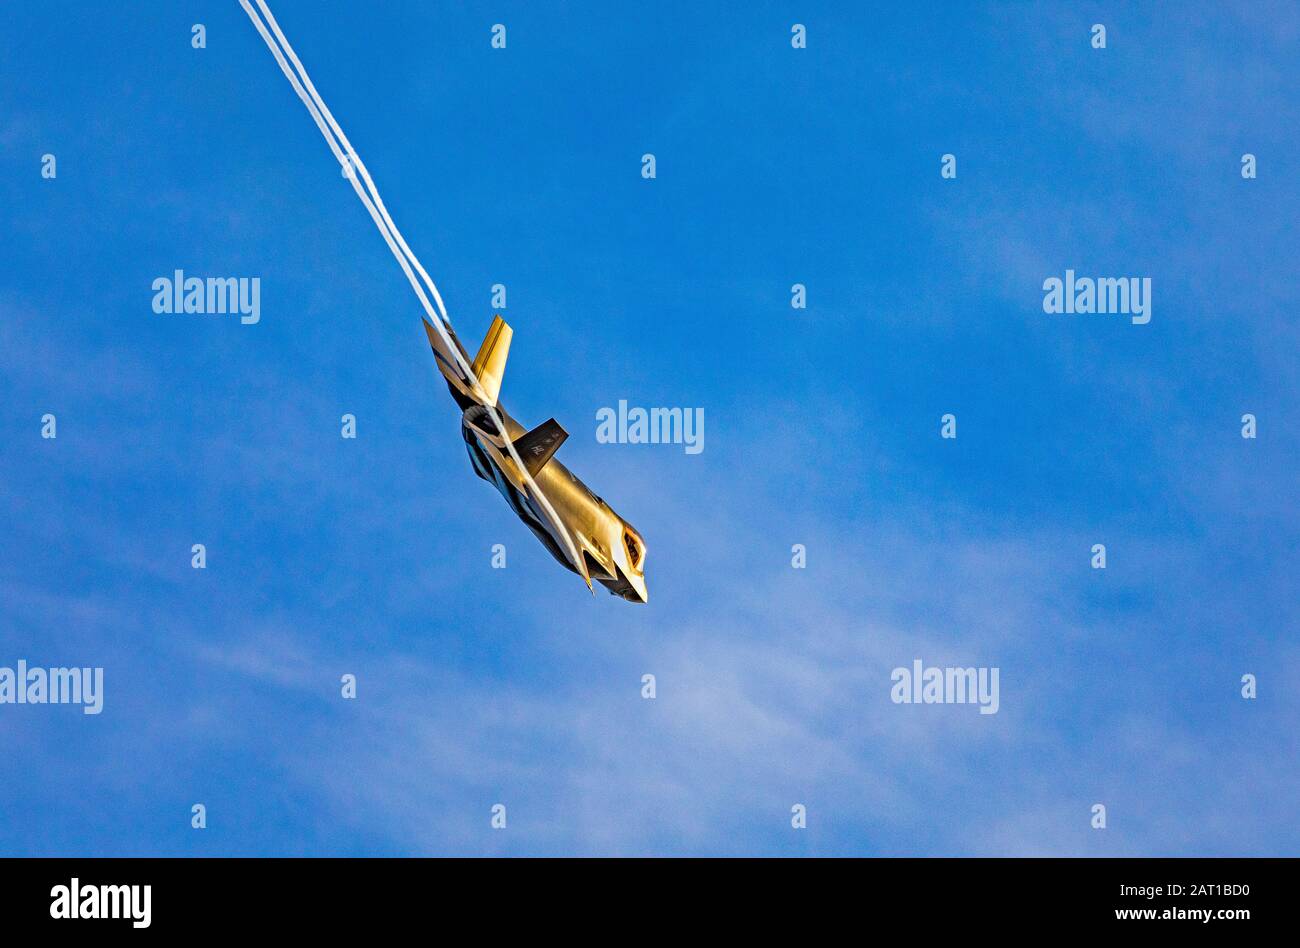 Le soleil couchant éclaire un chasseur à réaction Lockheed Martin F-35 A Lightning II alors qu'il traverse le ciel pendant une formation sur Layton, Utah, États-Unis. Banque D'Images